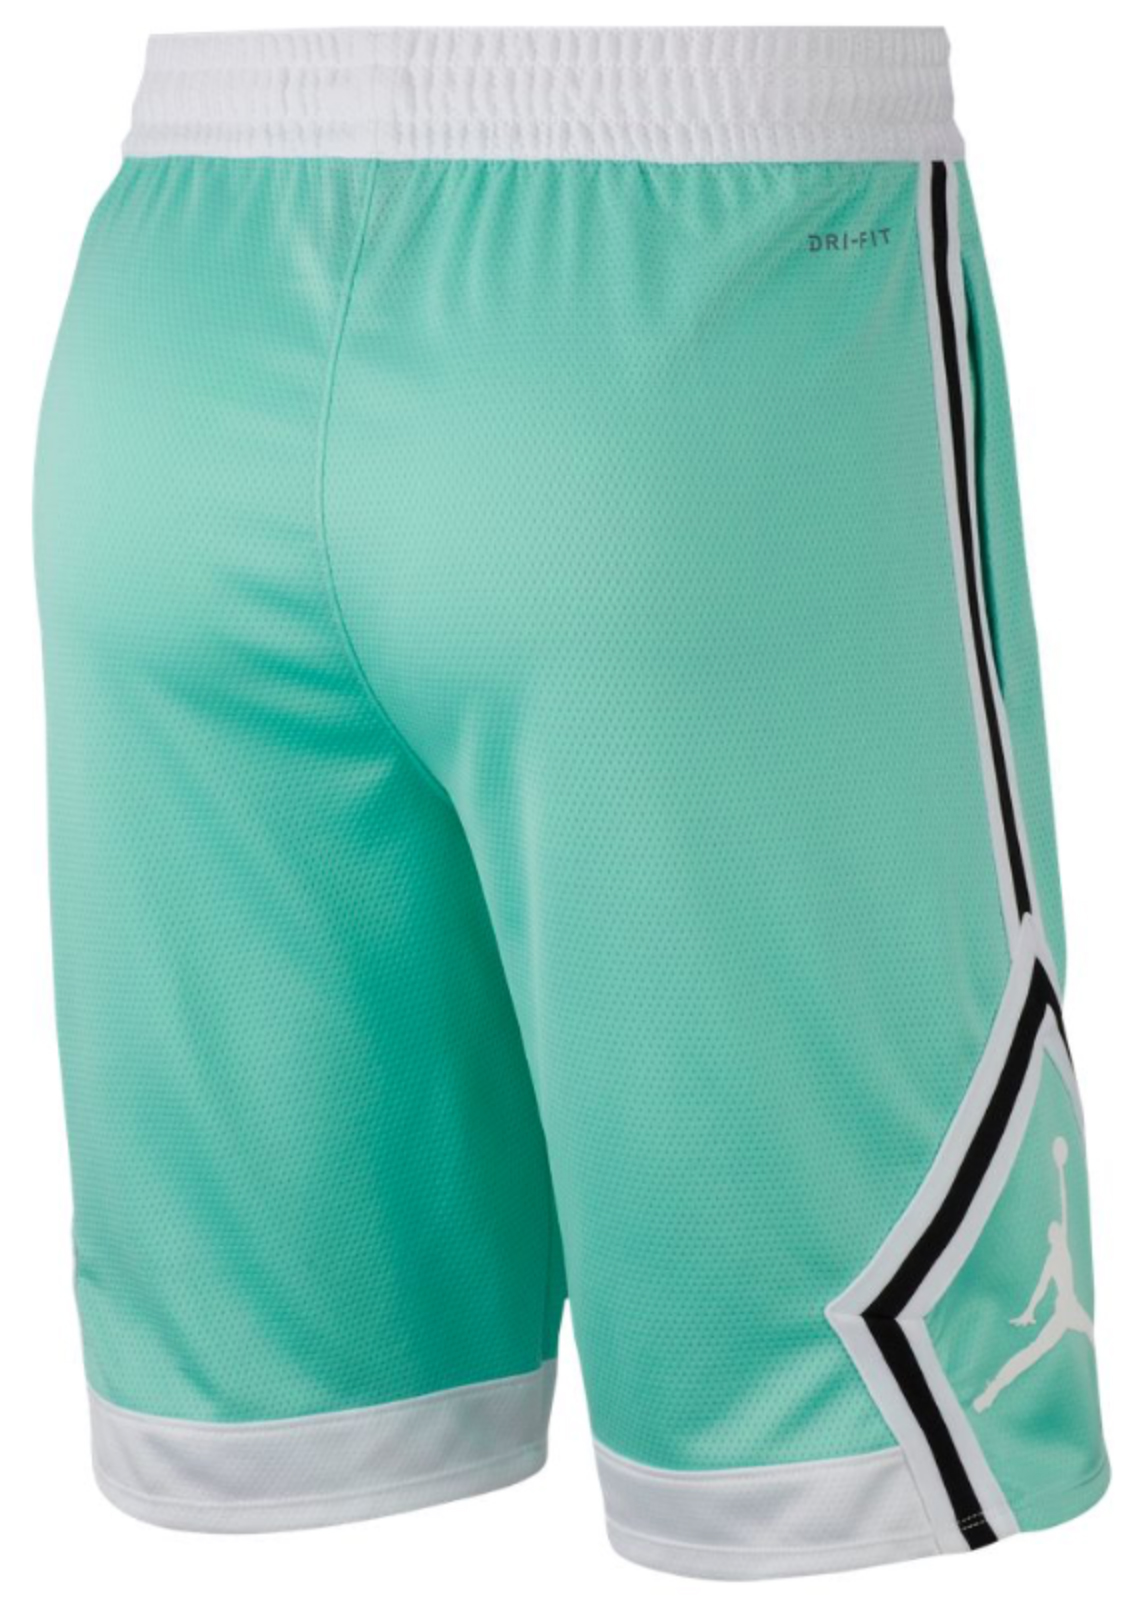 jordan-11-emerald-easter-shorts-match-2